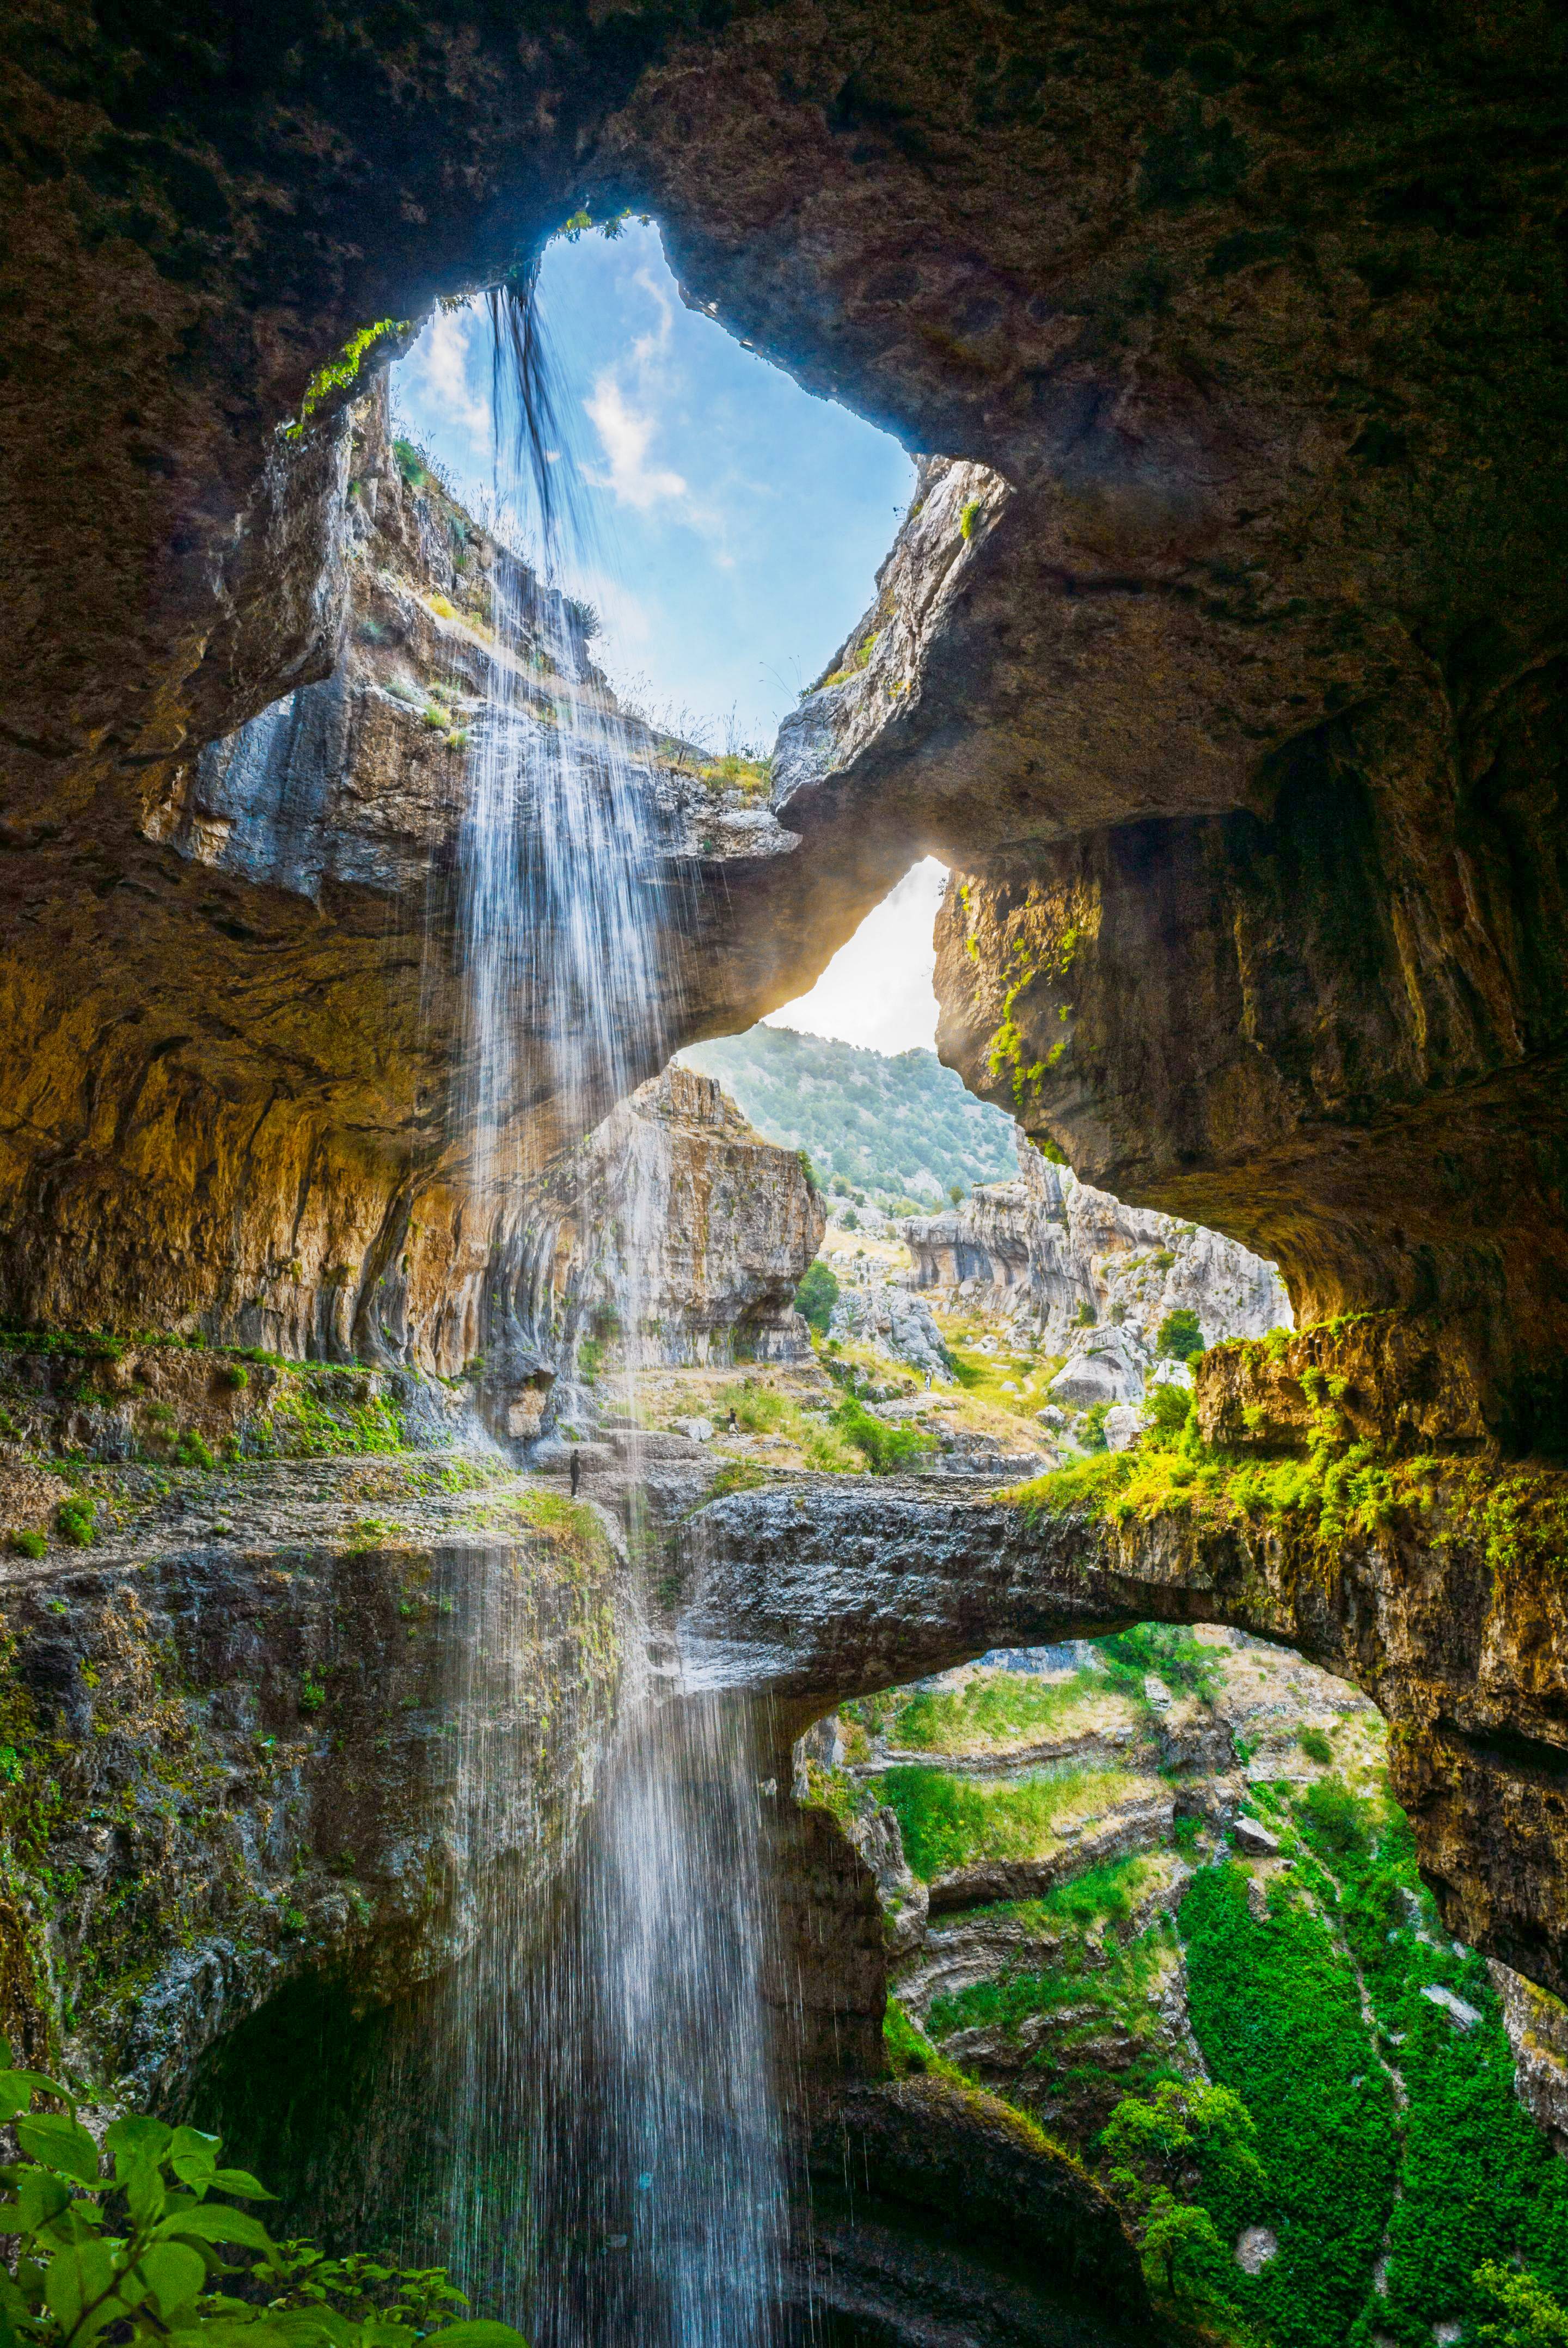 Baatara Gorge Waterfall, Lebanon